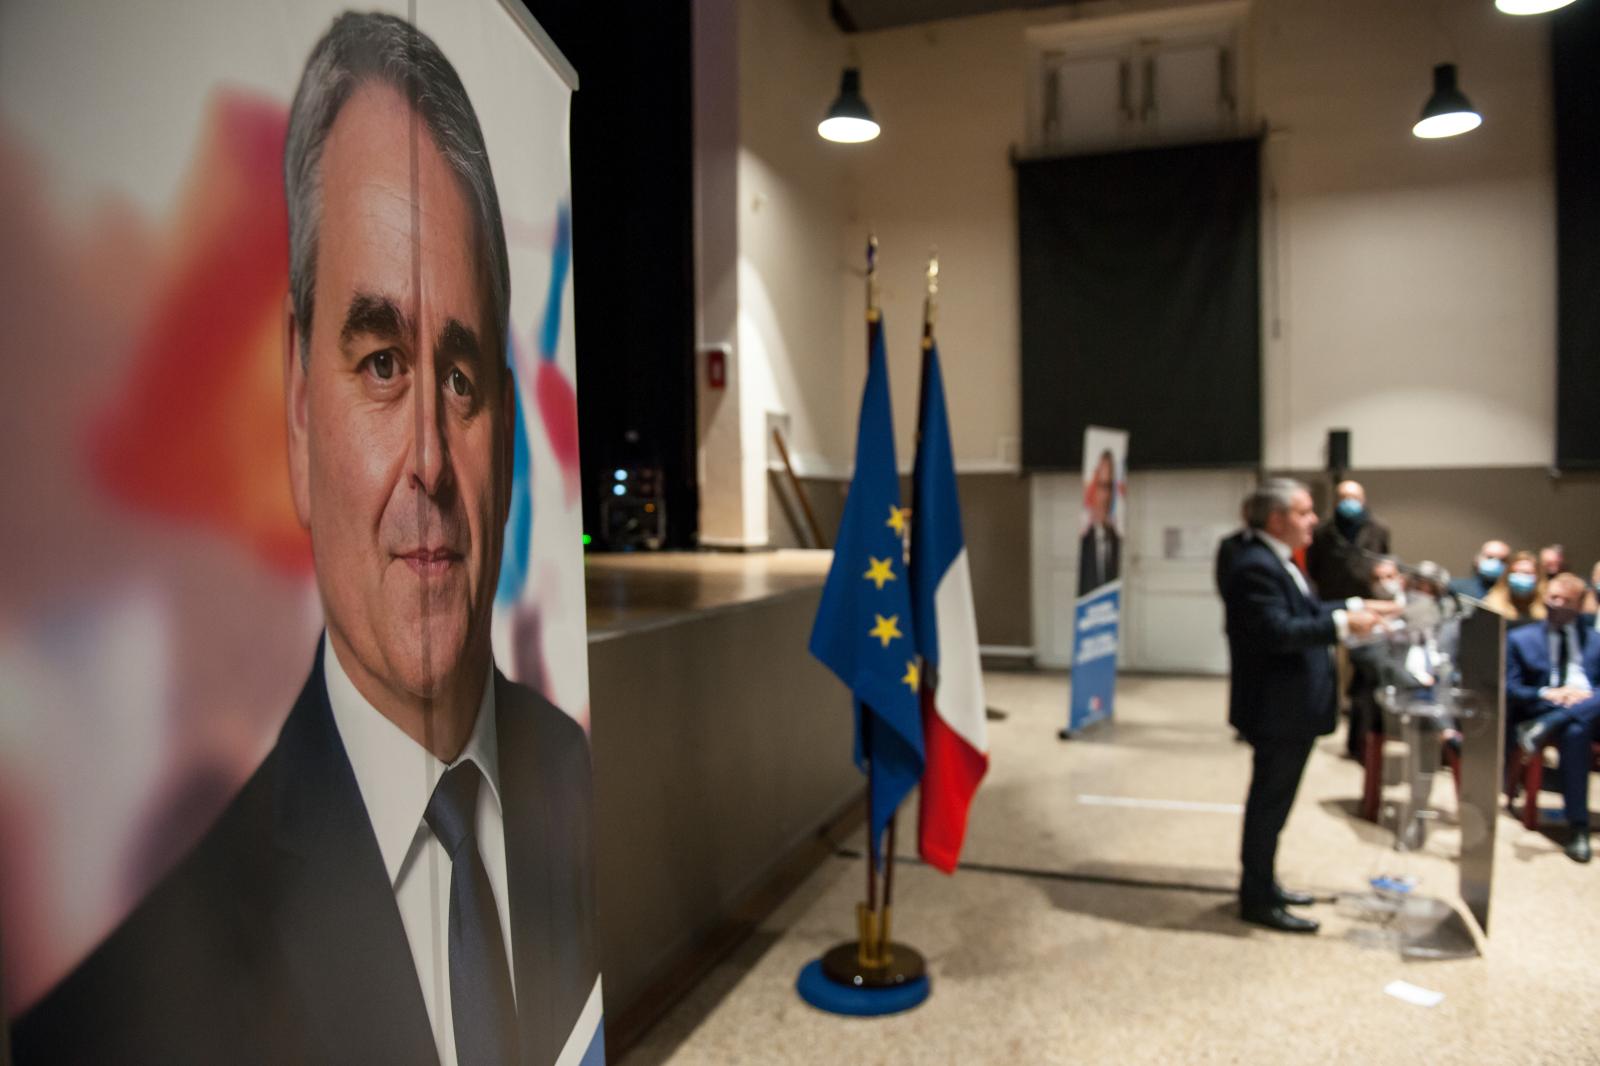 Image from politics - Un portrait de Xavier Bertrand occupe la partie gauche de...